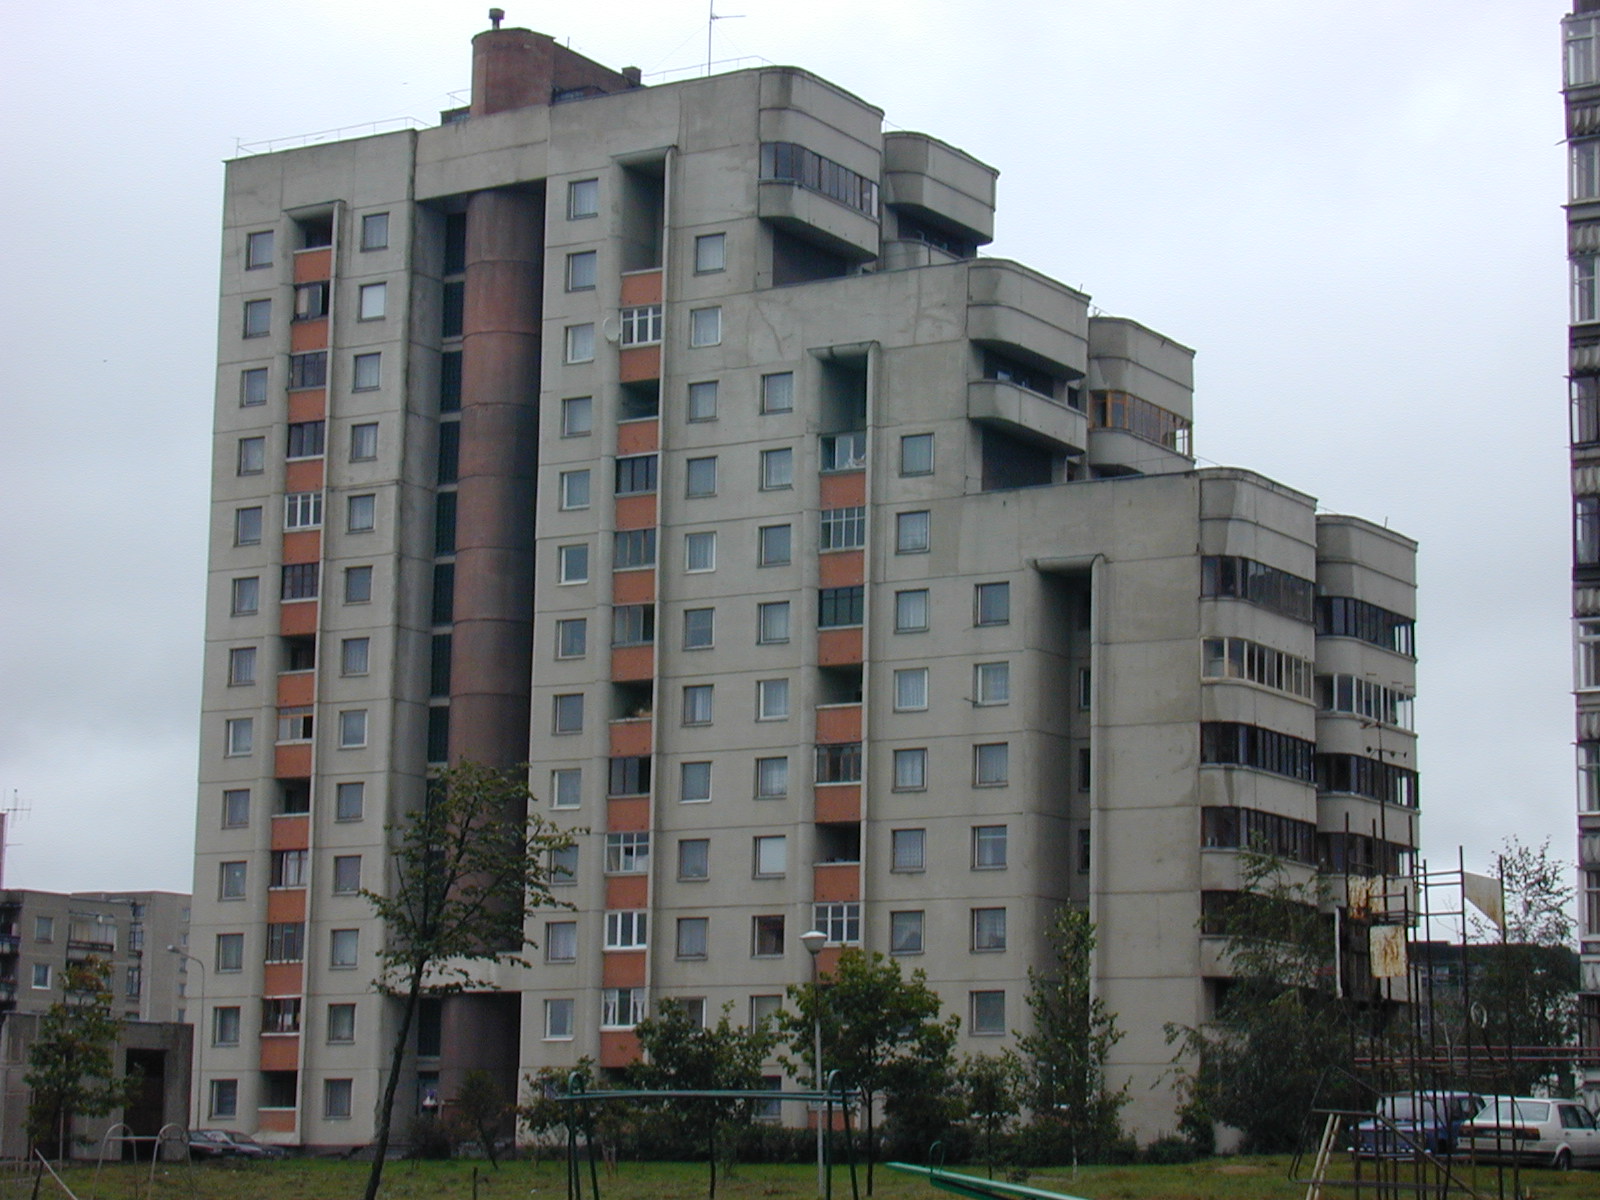 Rygos g. 26, Vilnius